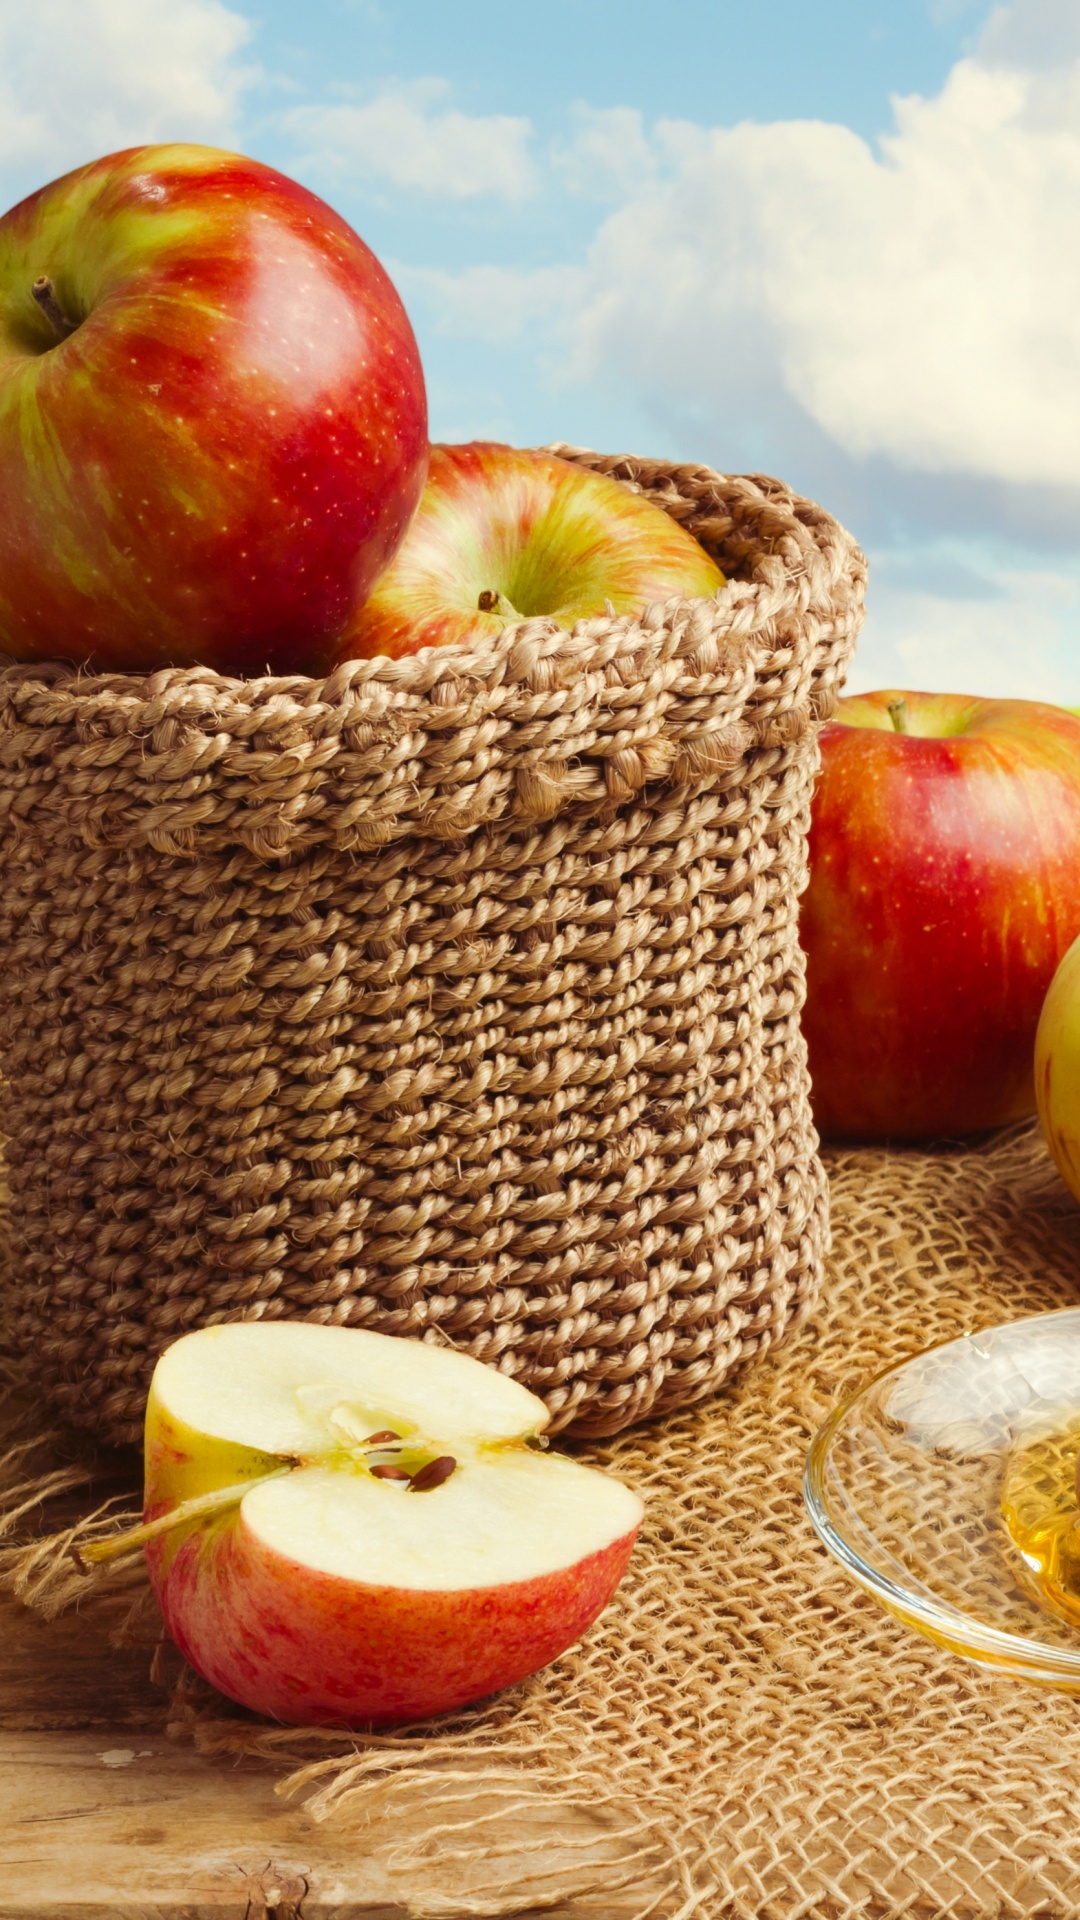 Apple, 食品, 天然的食物, 仍然生活, 饮食的食物 壁纸 1080x1920 允许